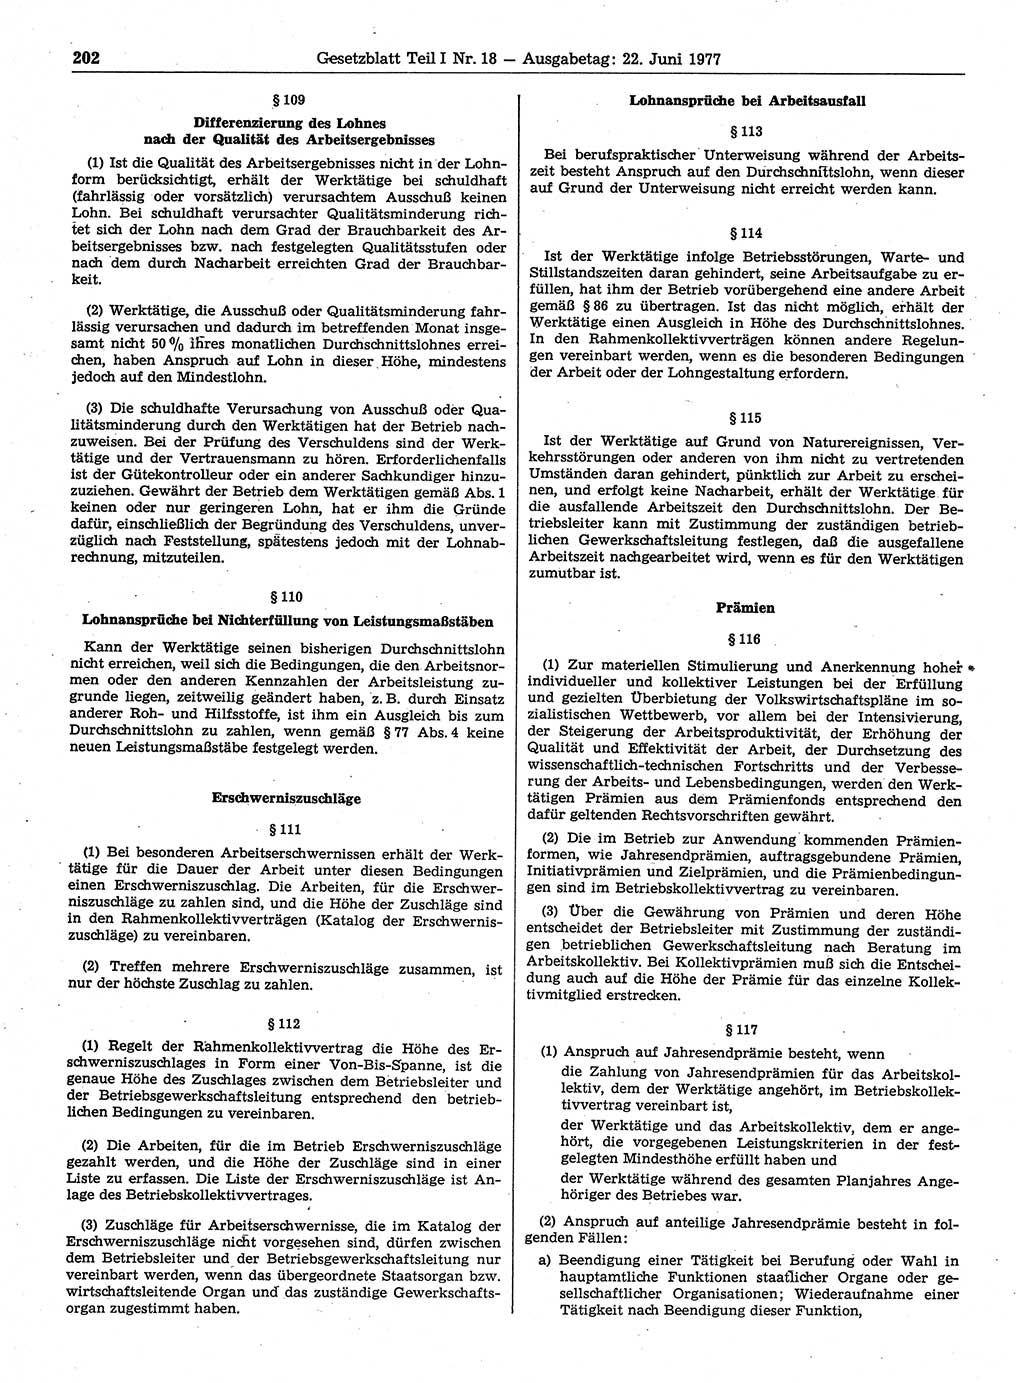 Gesetzblatt (GBl.) der Deutschen Demokratischen Republik (DDR) Teil Ⅰ 1977, Seite 202 (GBl. DDR Ⅰ 1977, S. 202)